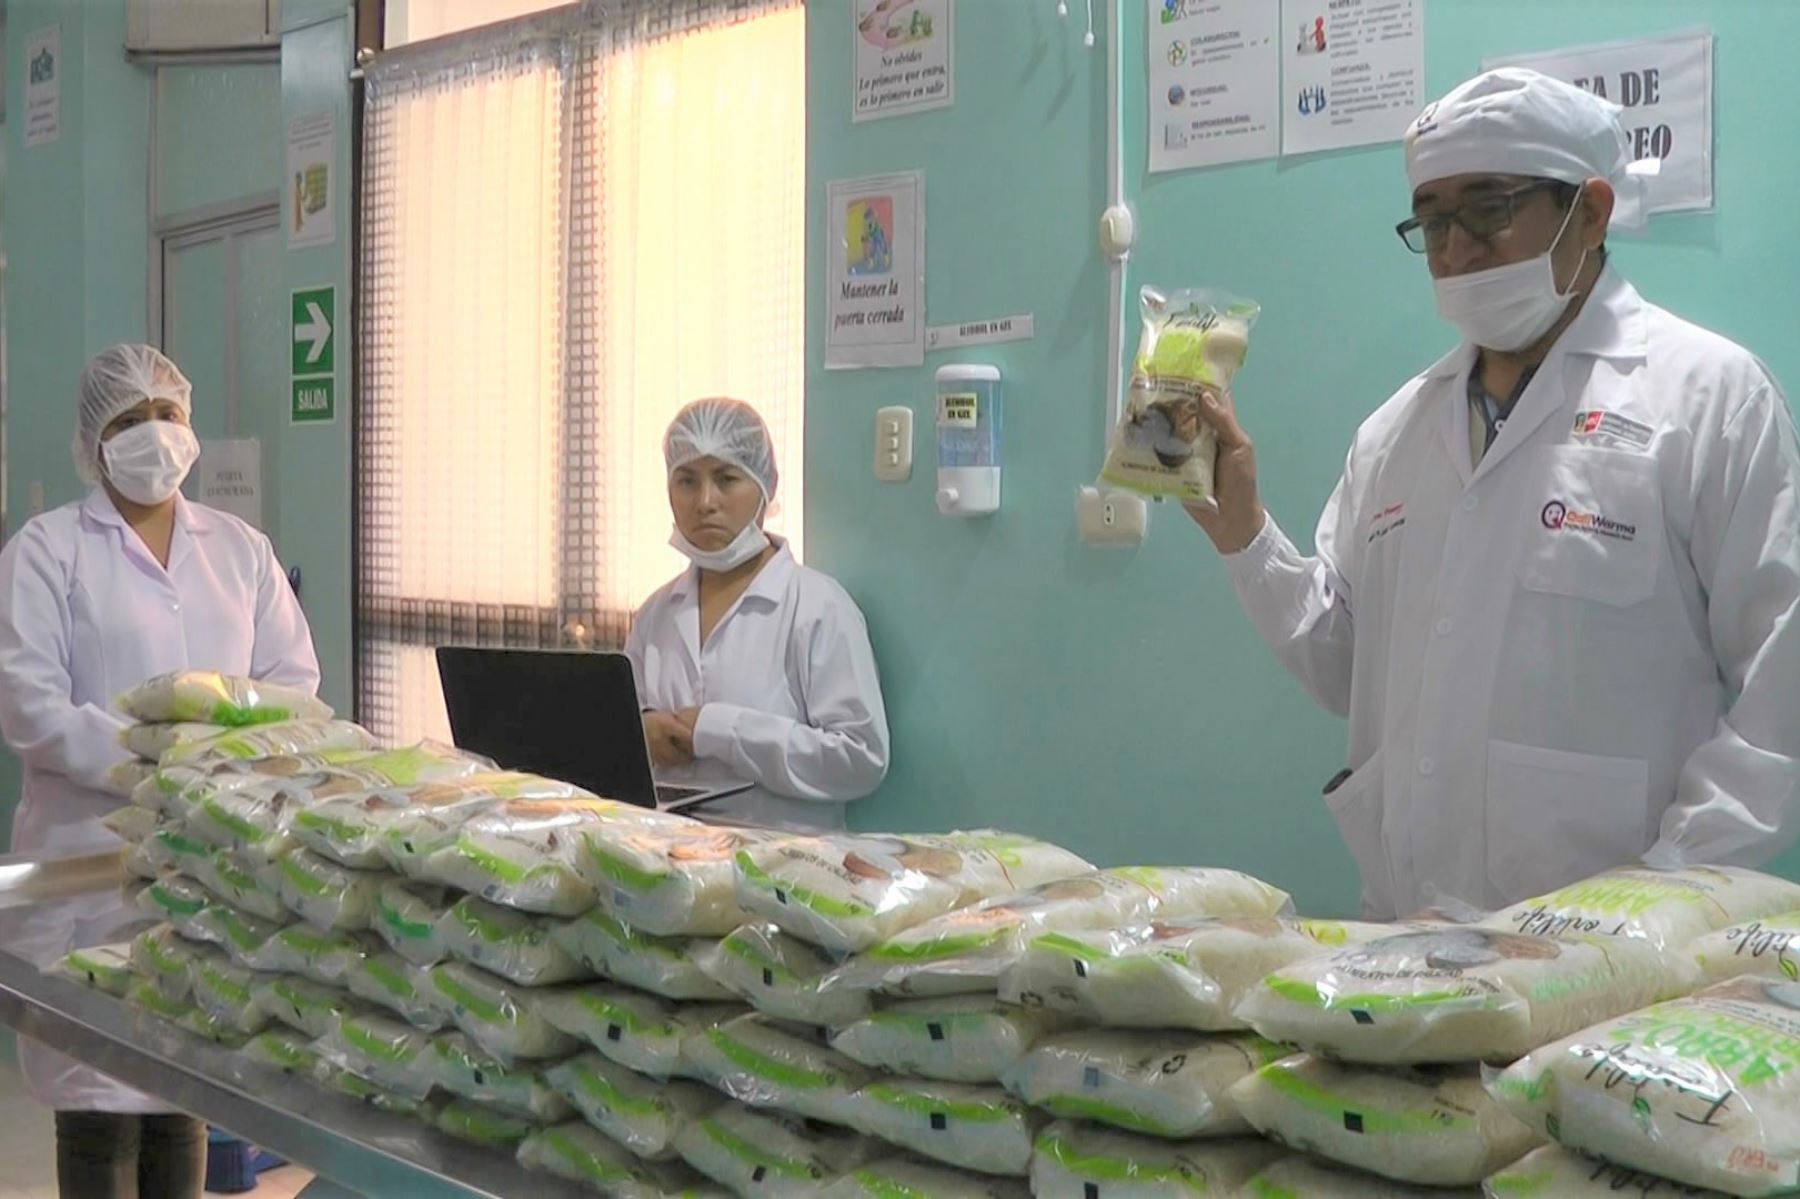 Qali Warma distribuye arroz fortificado en colegios de región Junín y pronto liberará otros alimentos para combatir la anemia. ANDINA